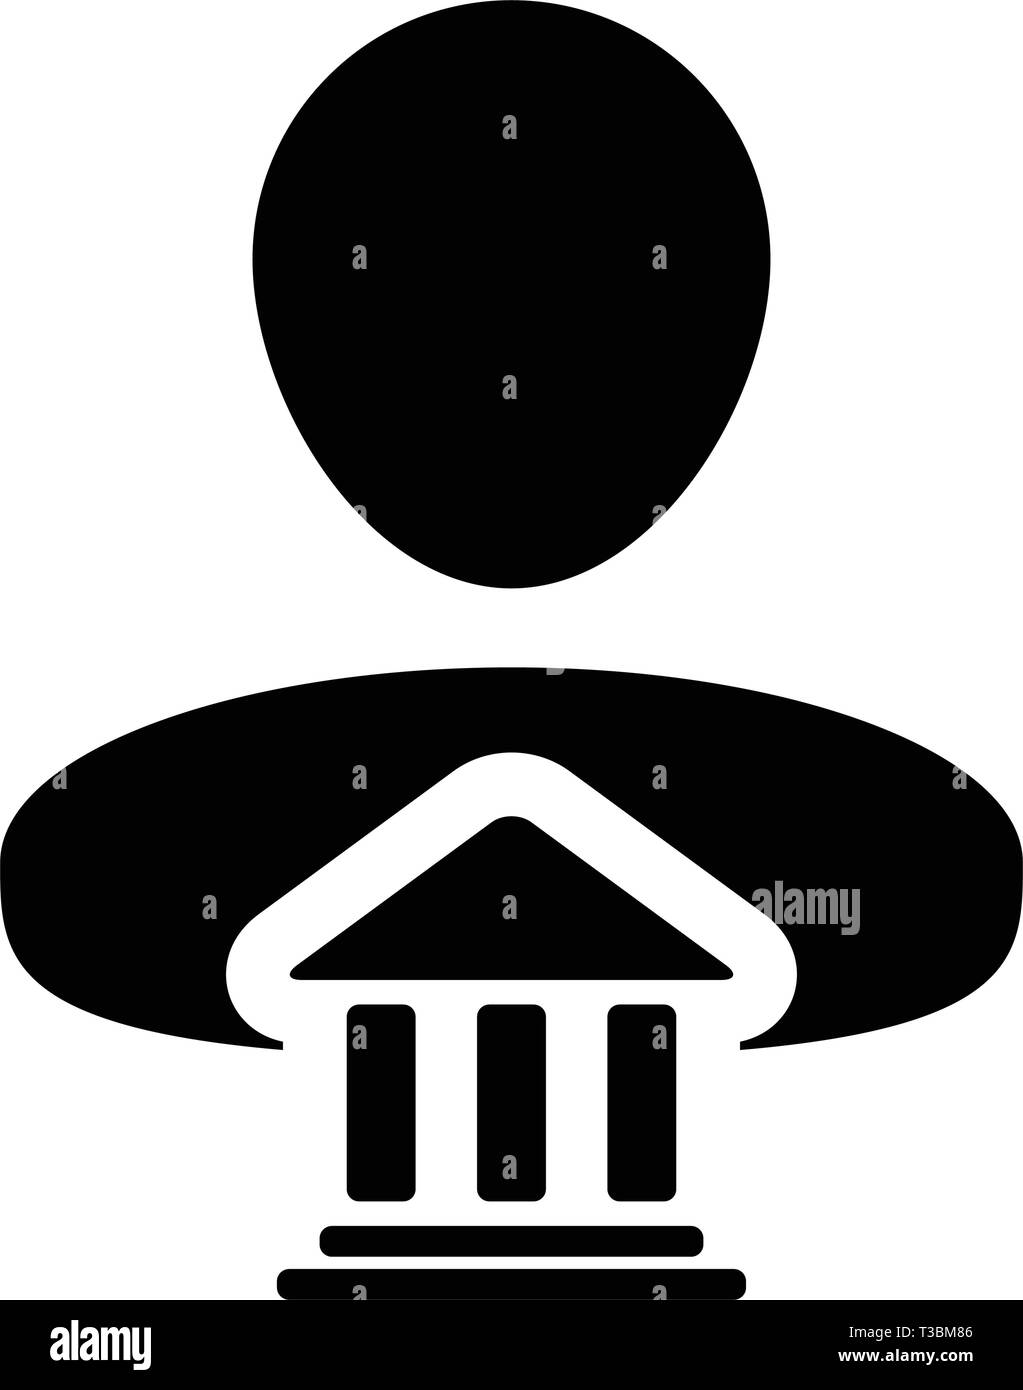 Kaution Symbol Vektor mit männliche Person Profil Avatar mit Gebäude Symbol für Banking und Finance in Glyph Piktogramm Abbildung Stock Vektor